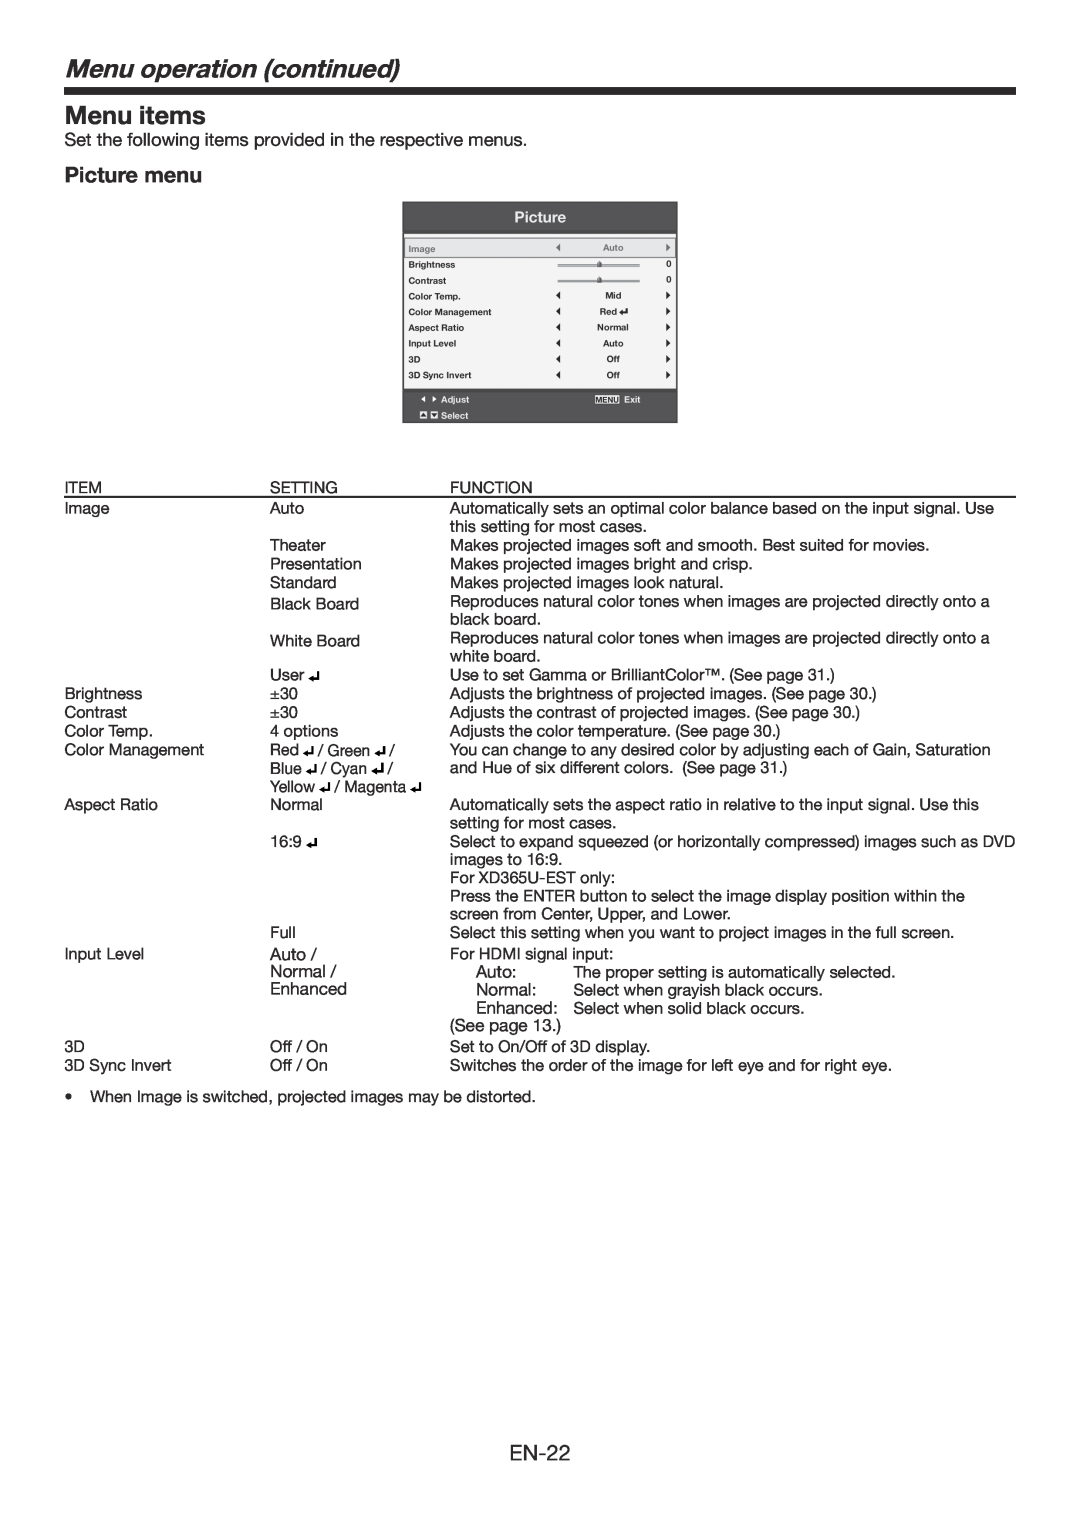 Mitsubishi Electronics WD385U-EST user manual Menu items, Picture menu, Menu operation continued 